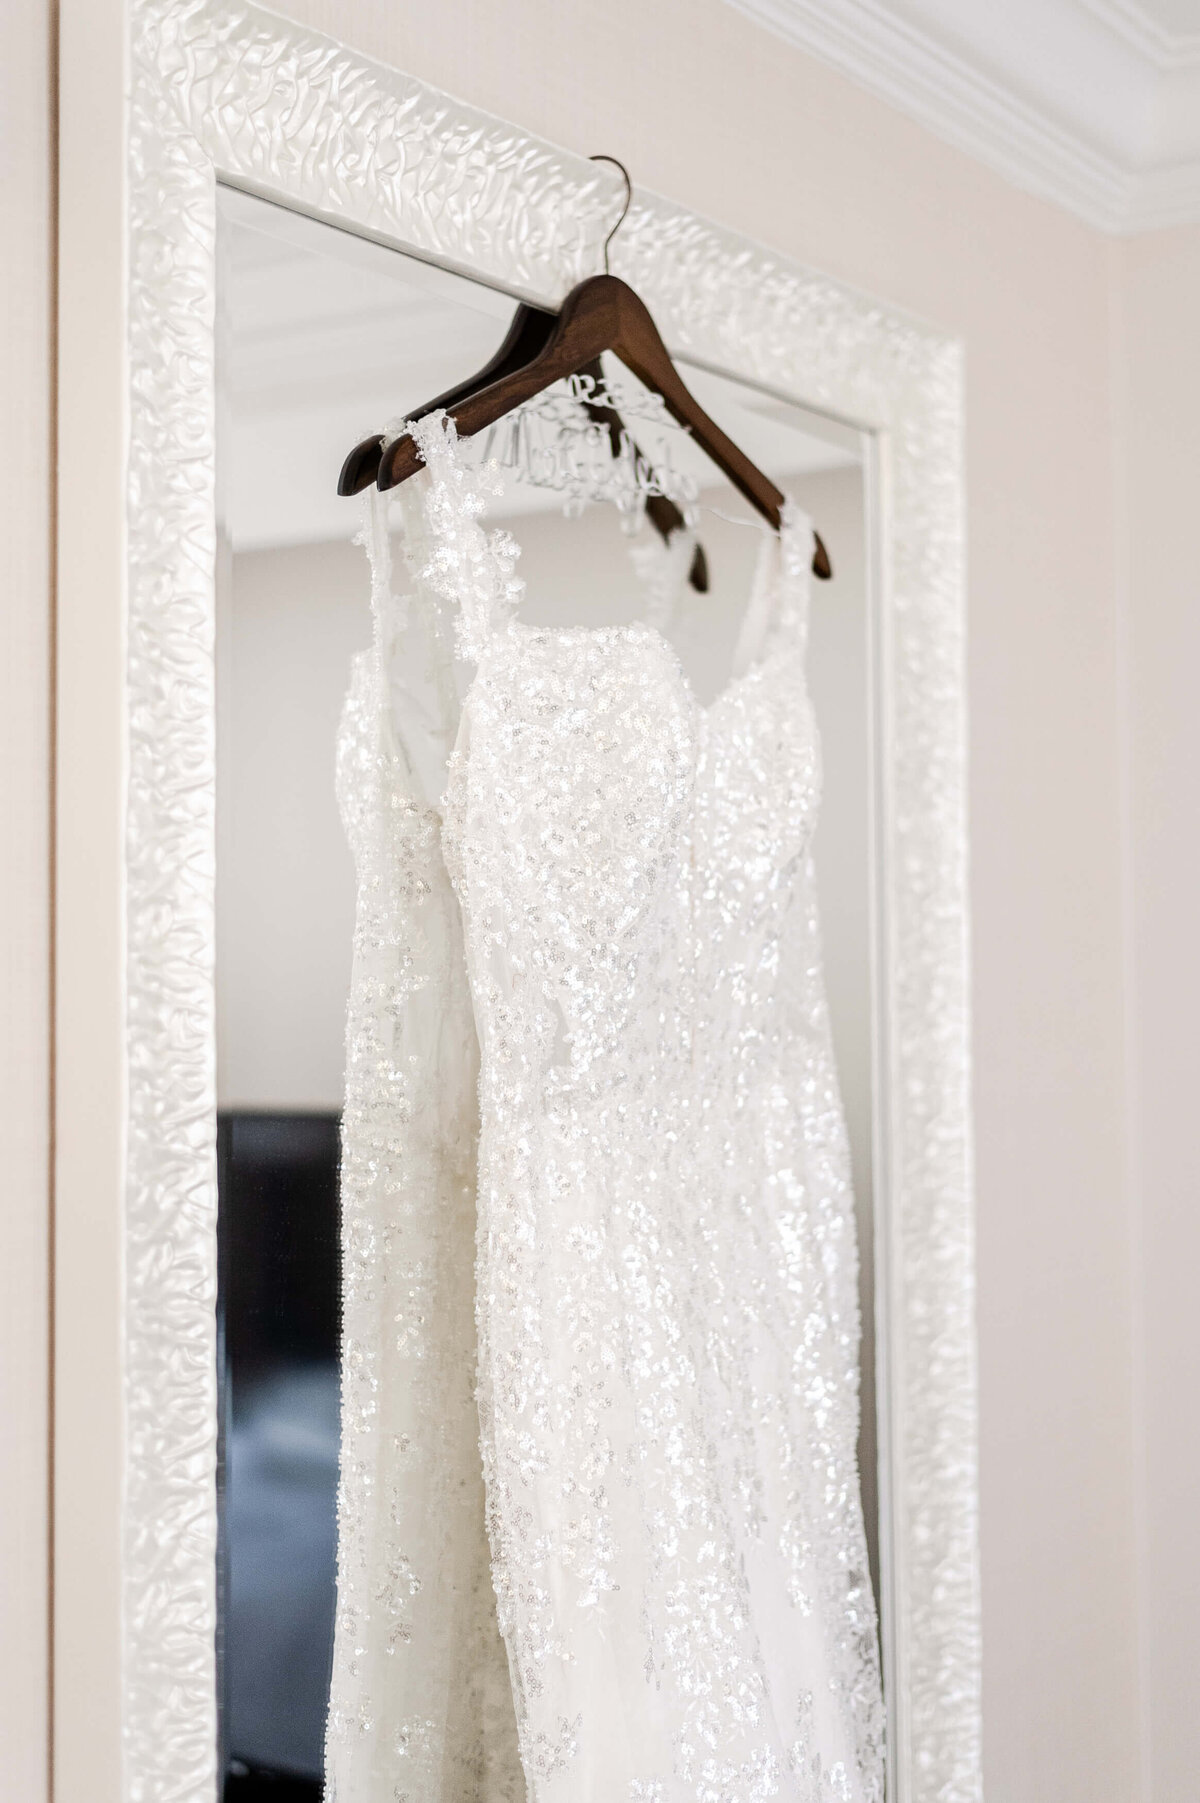 01_Wedding Gown Hanger Mirror Mayflower DC